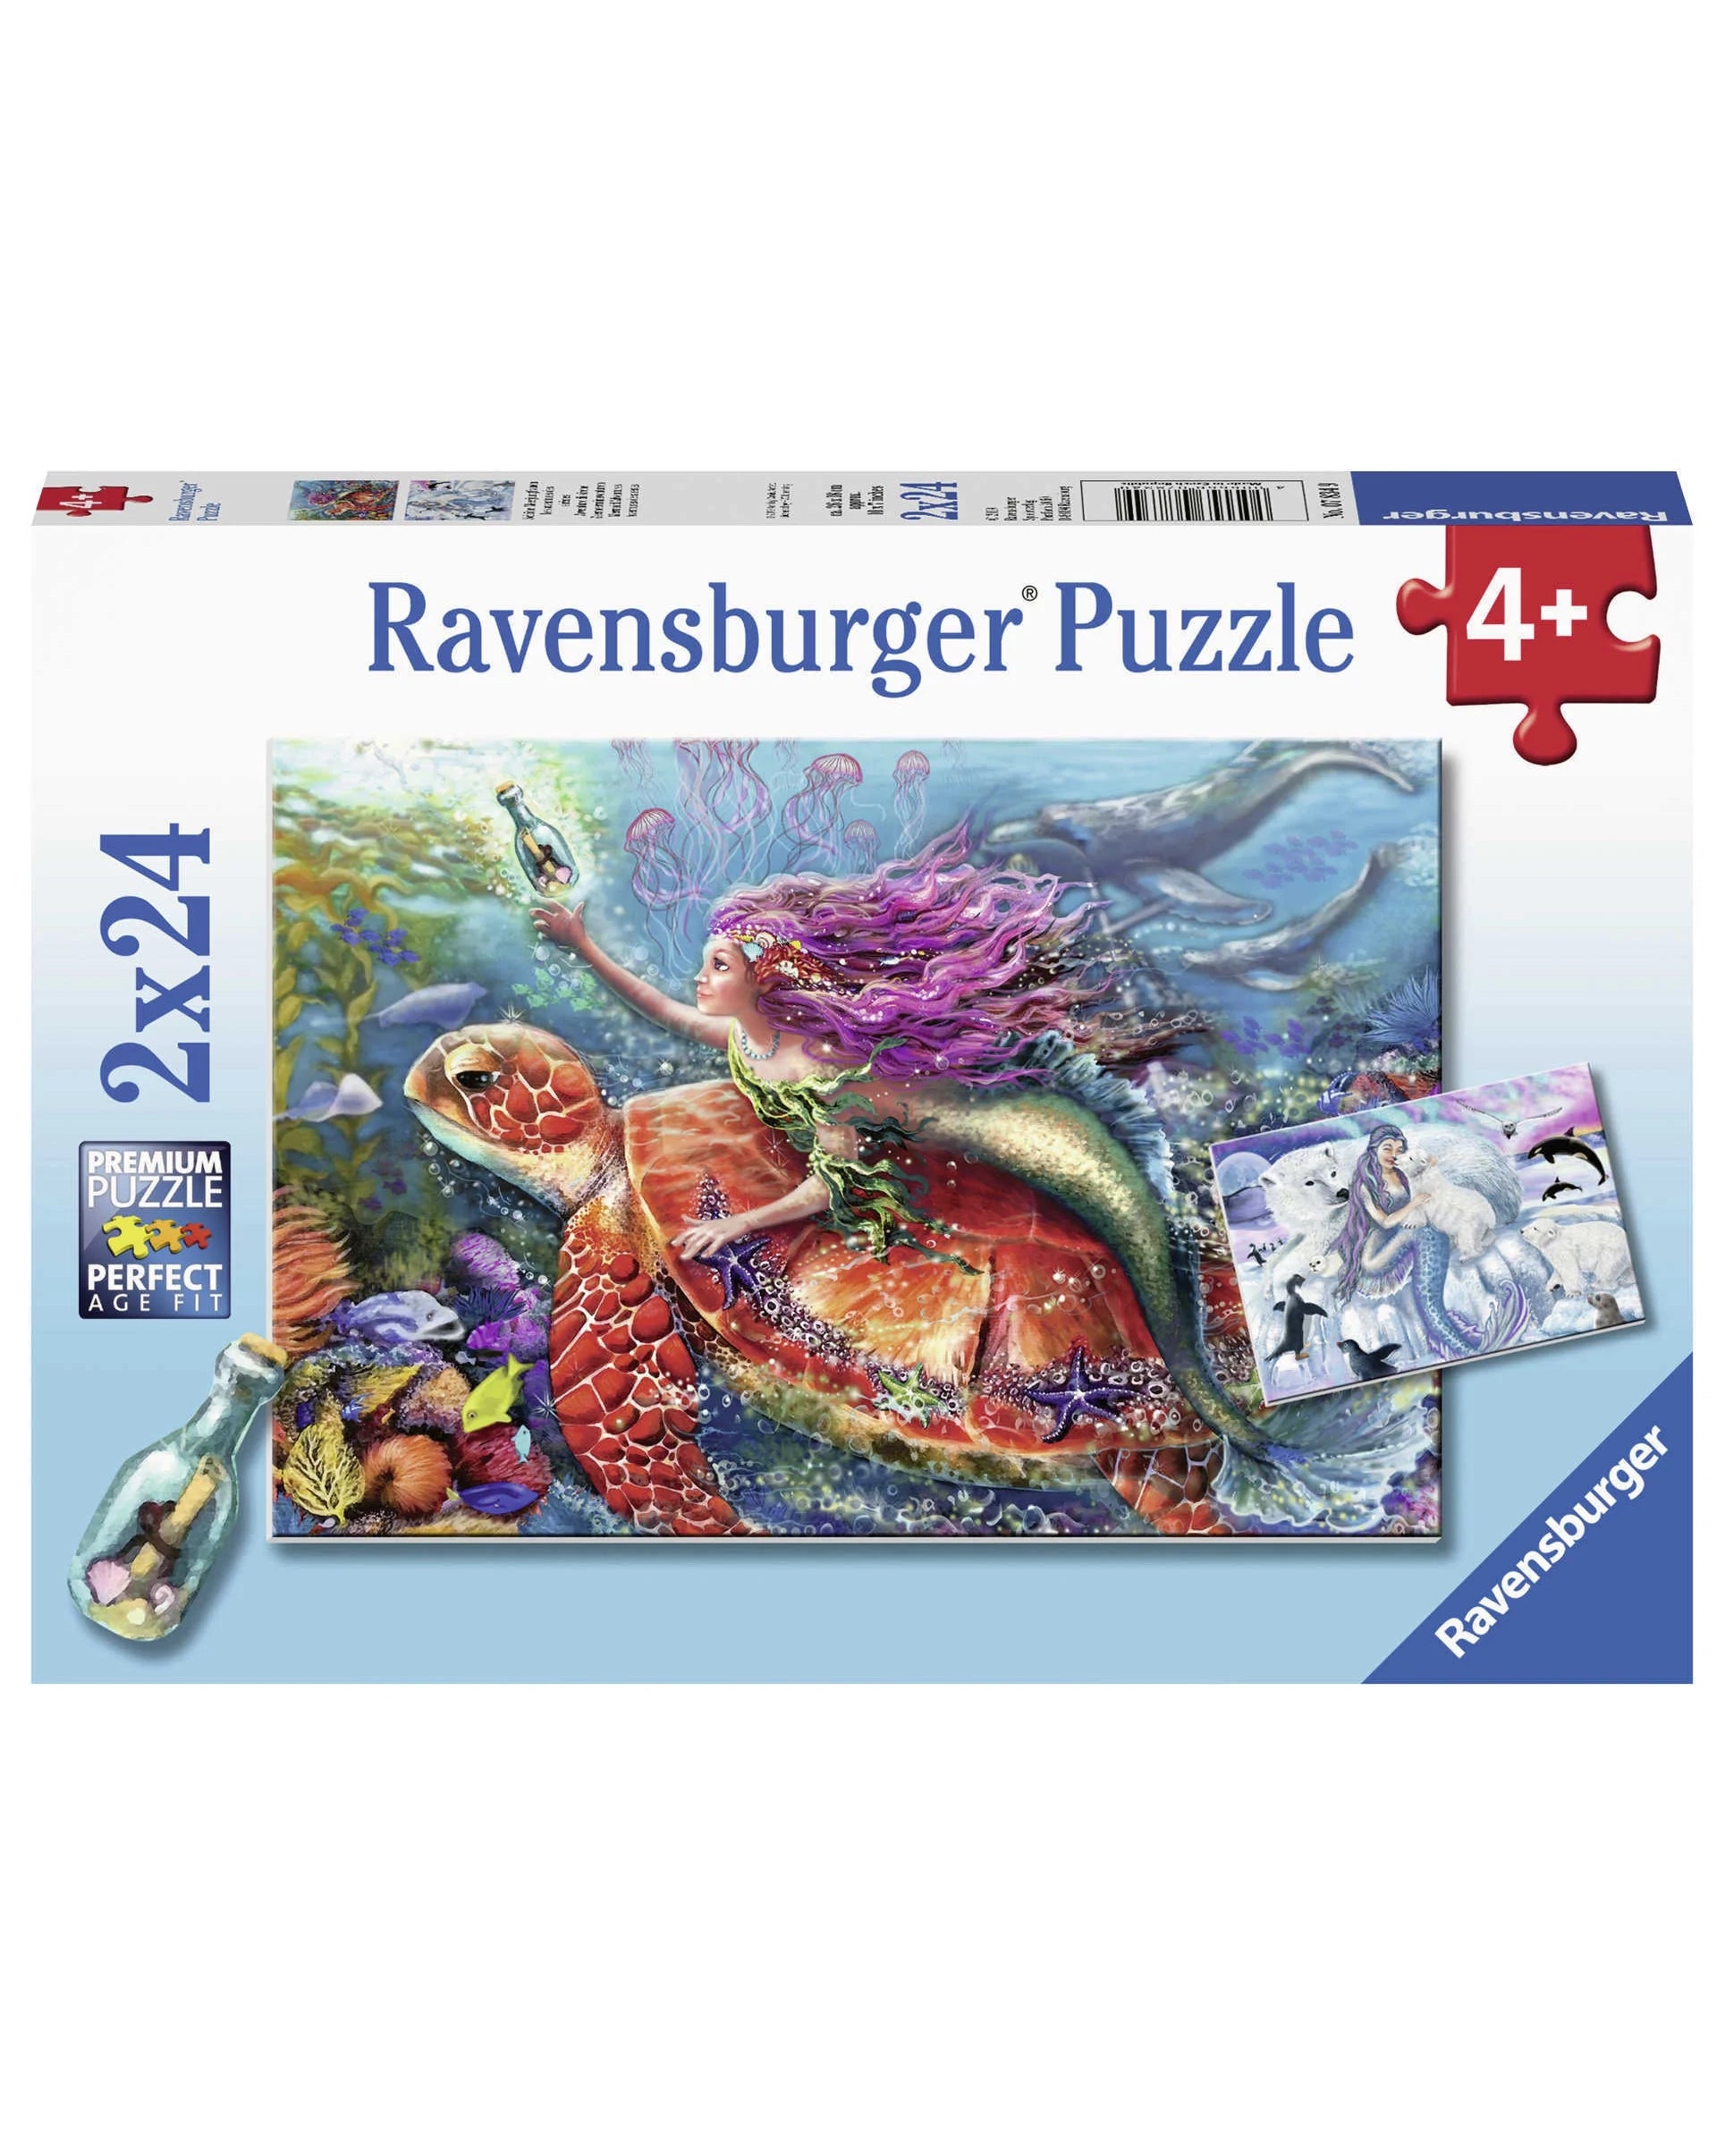 Ravensburger Puzzle - Mermaid Adventures 2x24pc